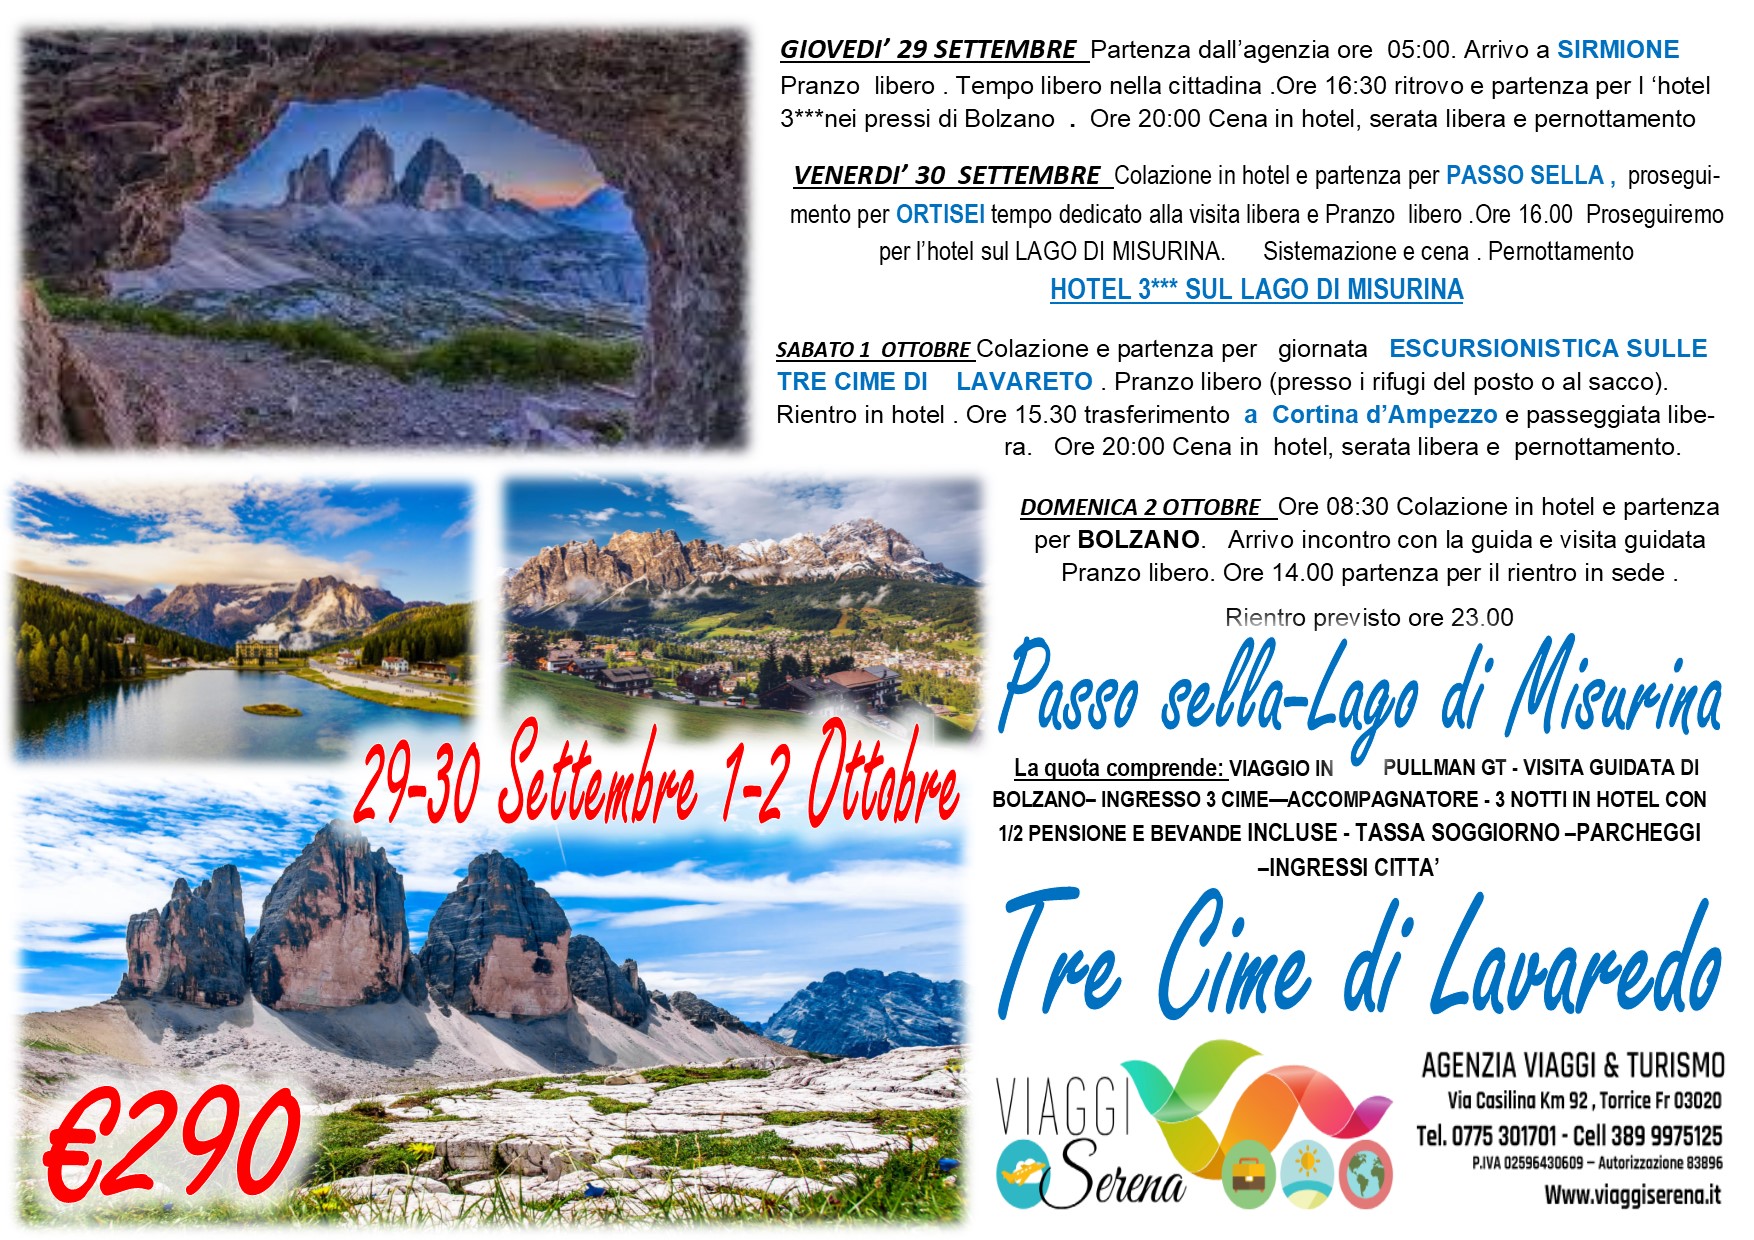 Viaggi di Gruppo: Passo Sella, Lago di Misurina & Tre Cime di Lavaredo 29-30 Settembre 1-2 Ottobre € 290,00